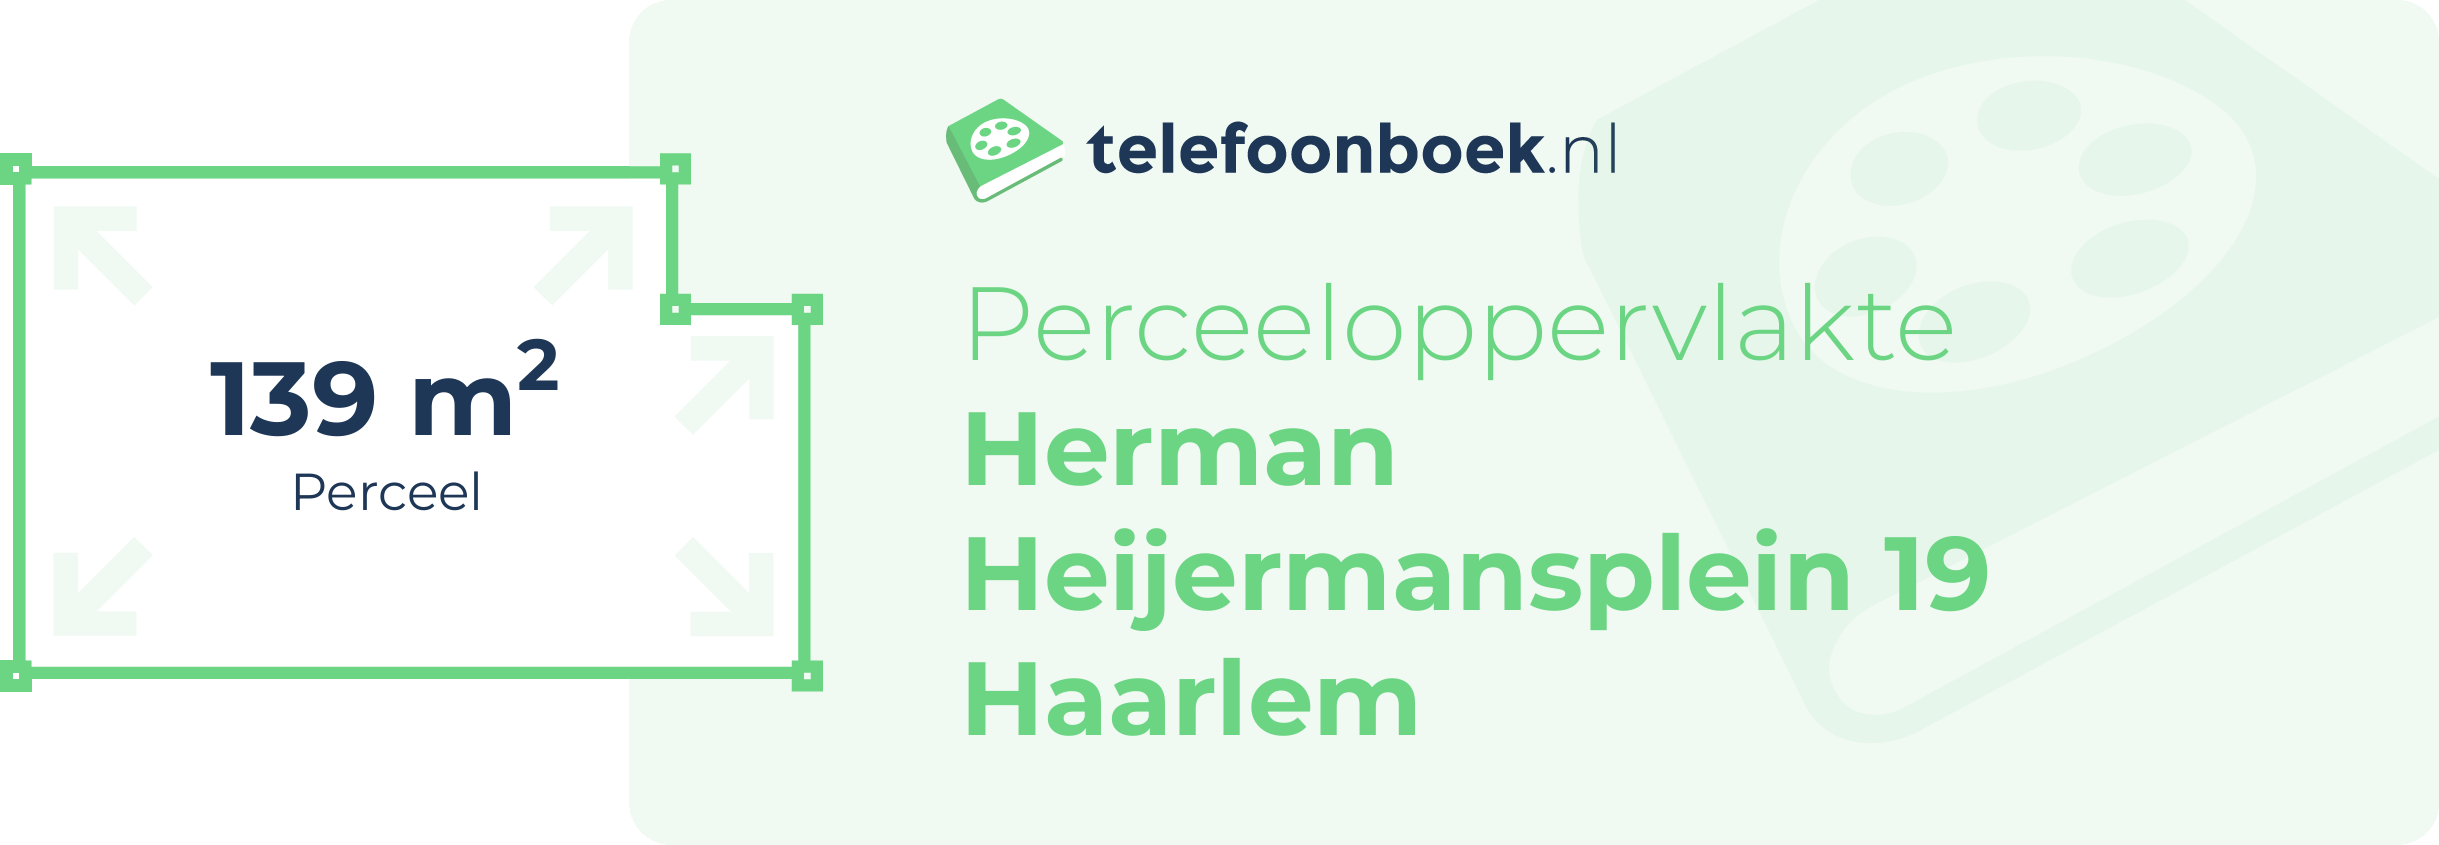 Perceeloppervlakte Herman Heijermansplein 19 Haarlem